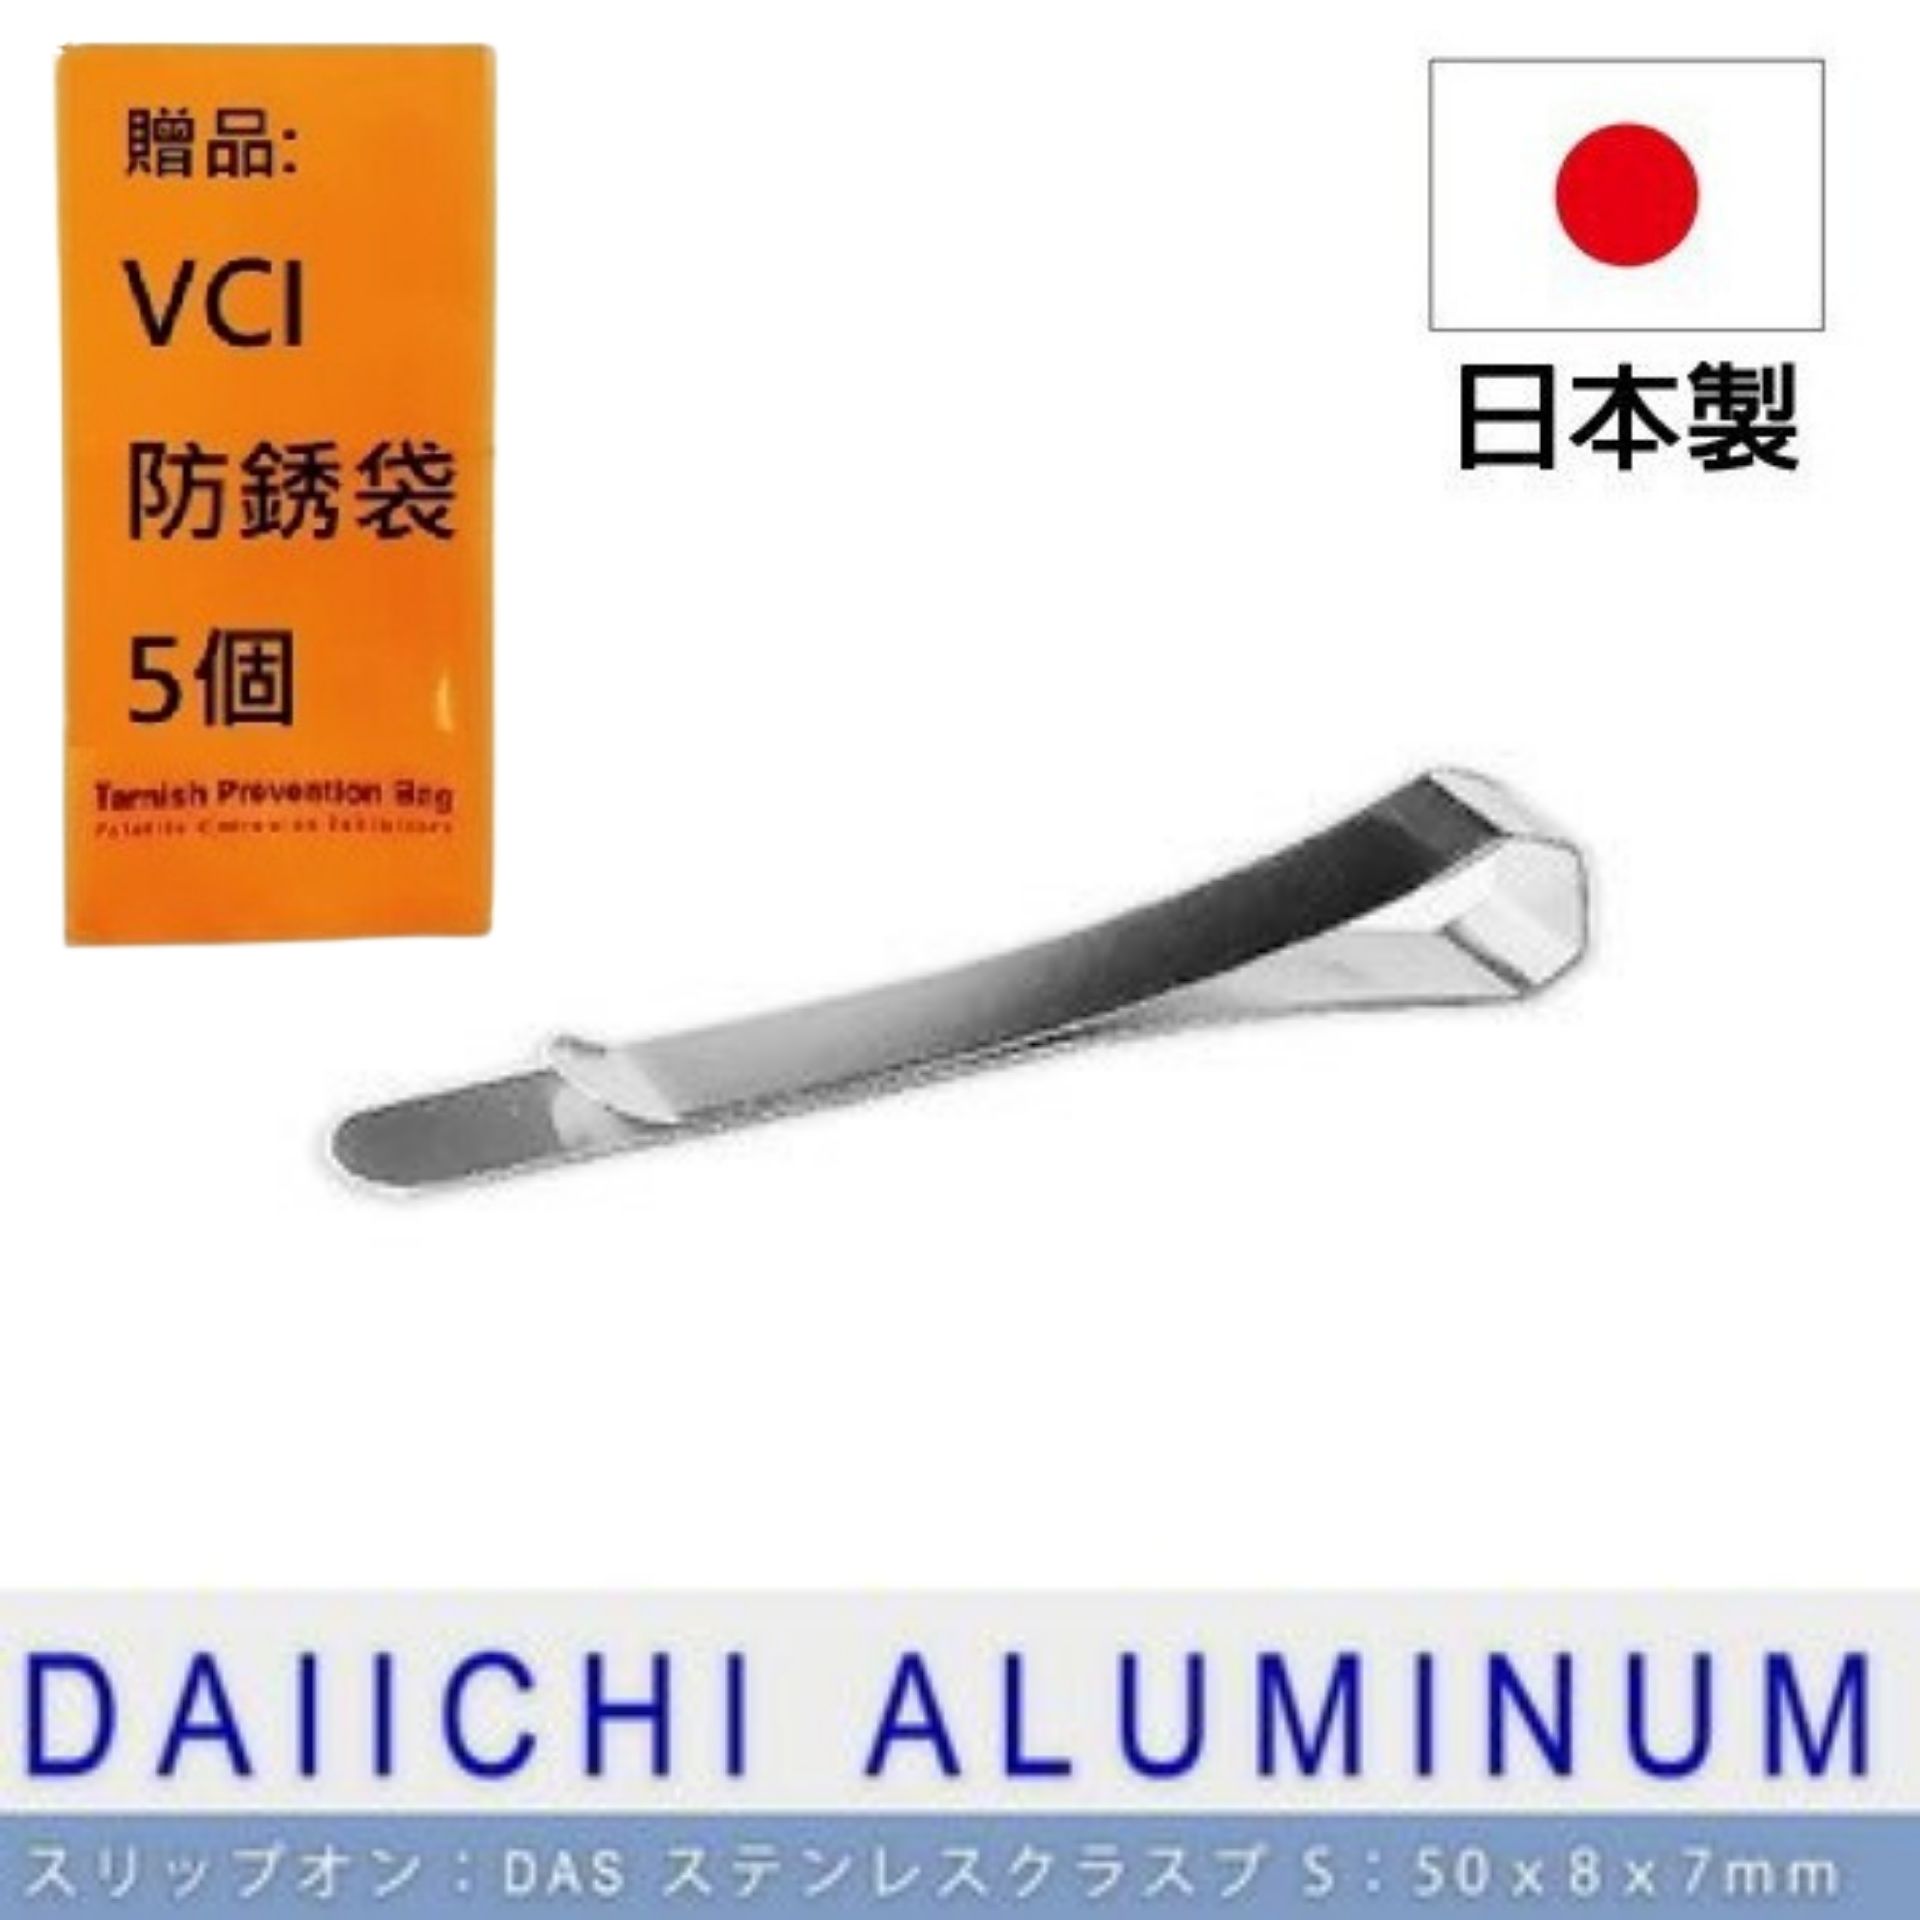 【Daiichi】多功能不鏽鋼夾-S (3入組） 也可以將其用作備有備忘錄的錢夾